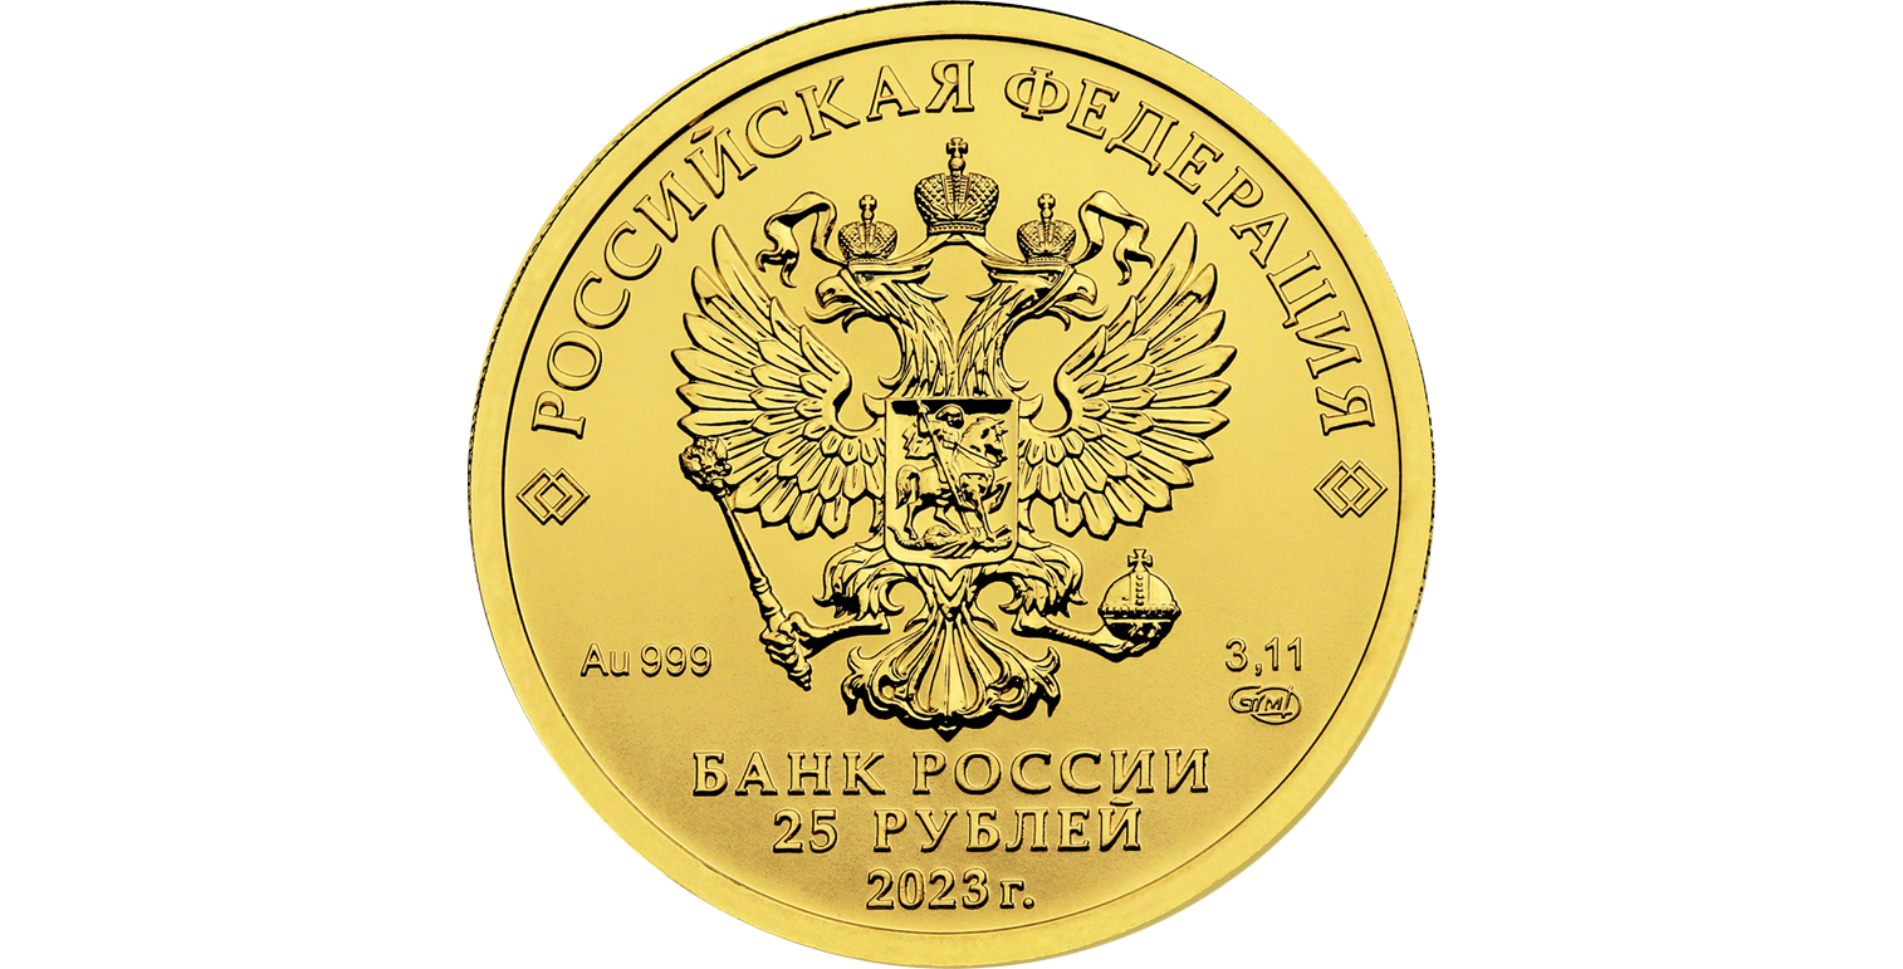 Рубли банка россии